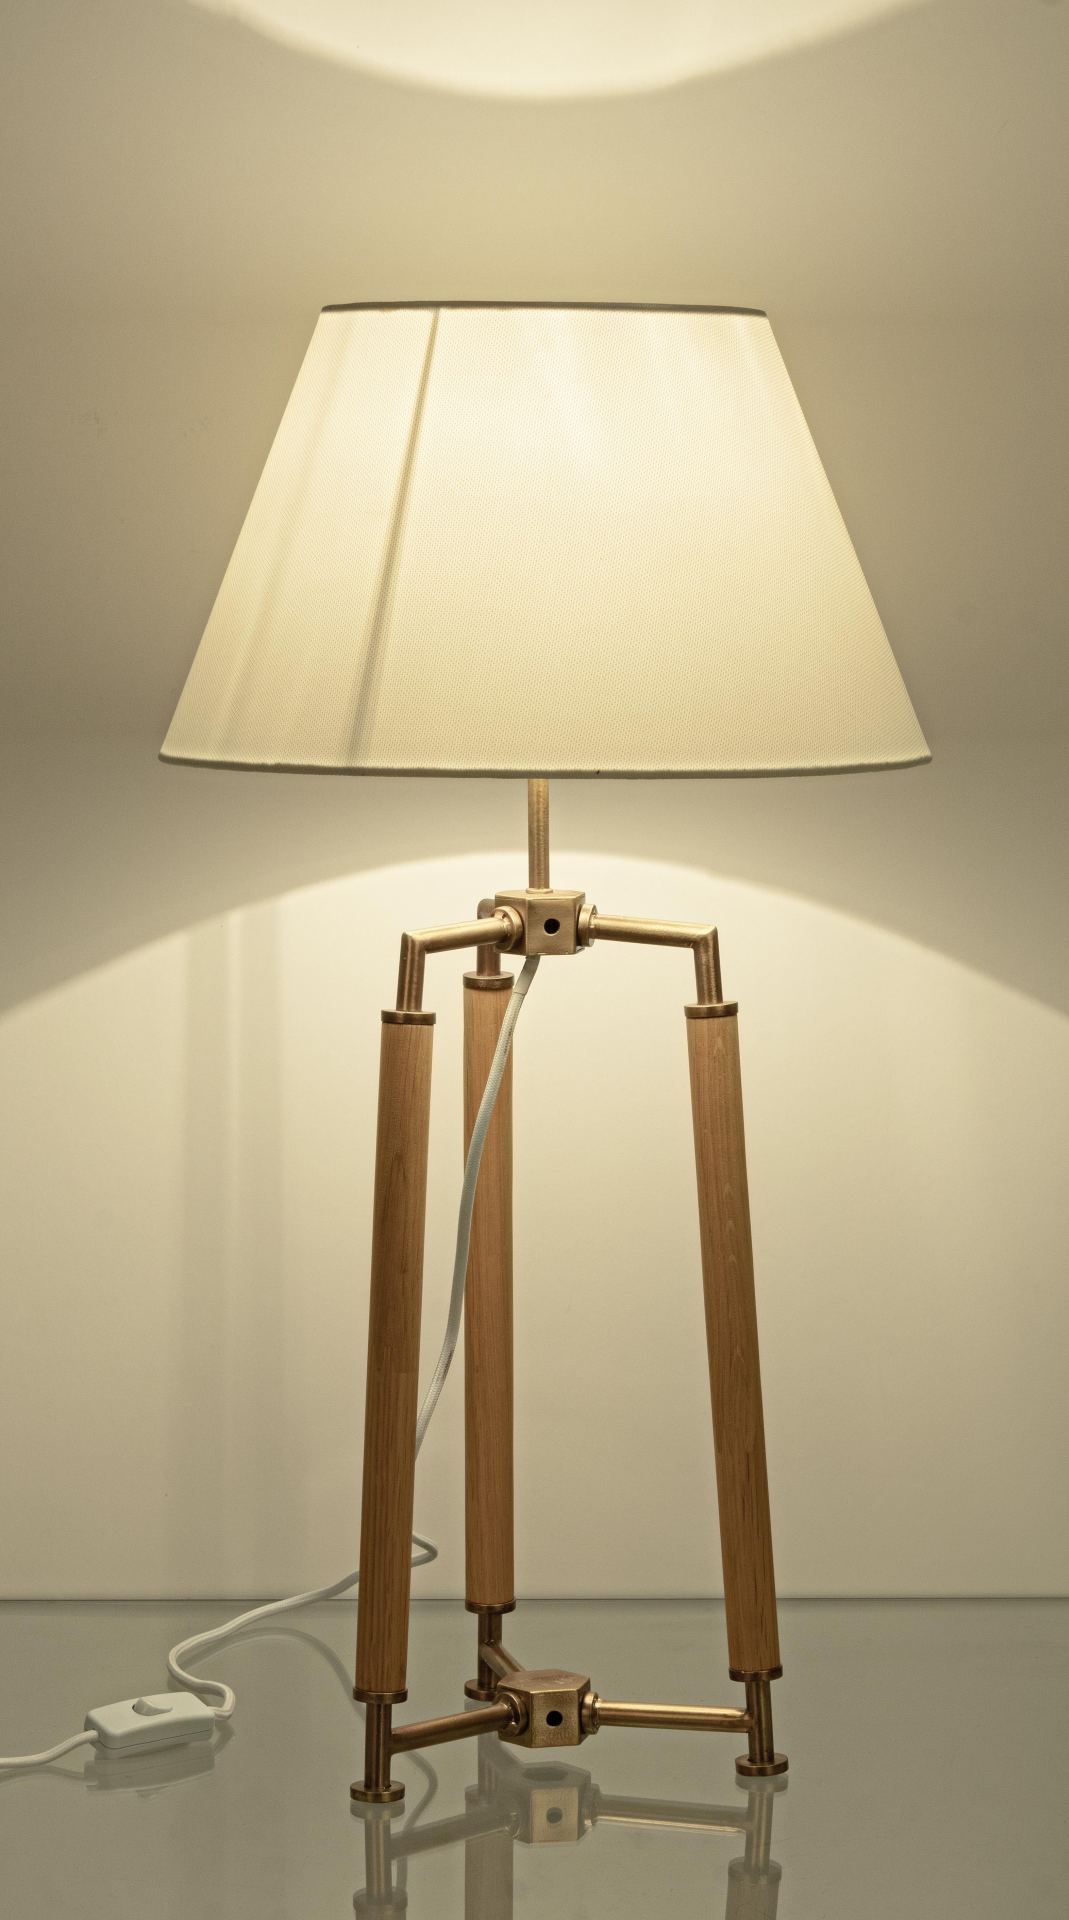 Die Tischleuchte Ellinor überzeugt mit ihrem klassischen Design. Gefertigt wurde sie aus Metall, welches einen Messing Farbton besitzt. Der Lampenschirm ist aus Baumwolle und hat eine weiße Farbe. Die Lampe besitzt eine Höhe von 65,5 cm.